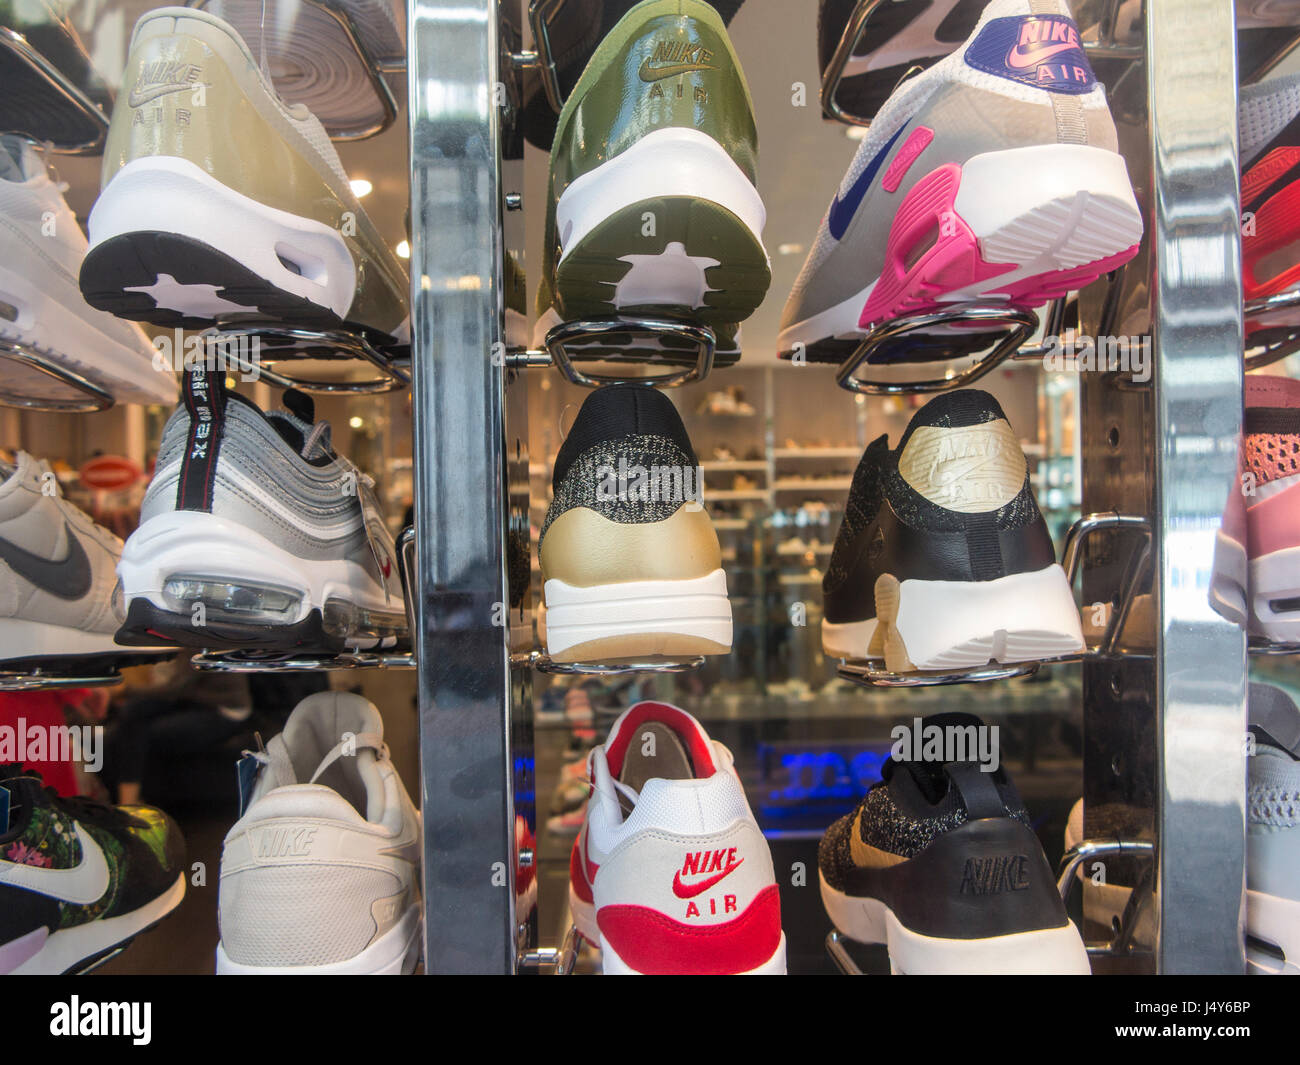 boutique adidas sur paris|New daily offers